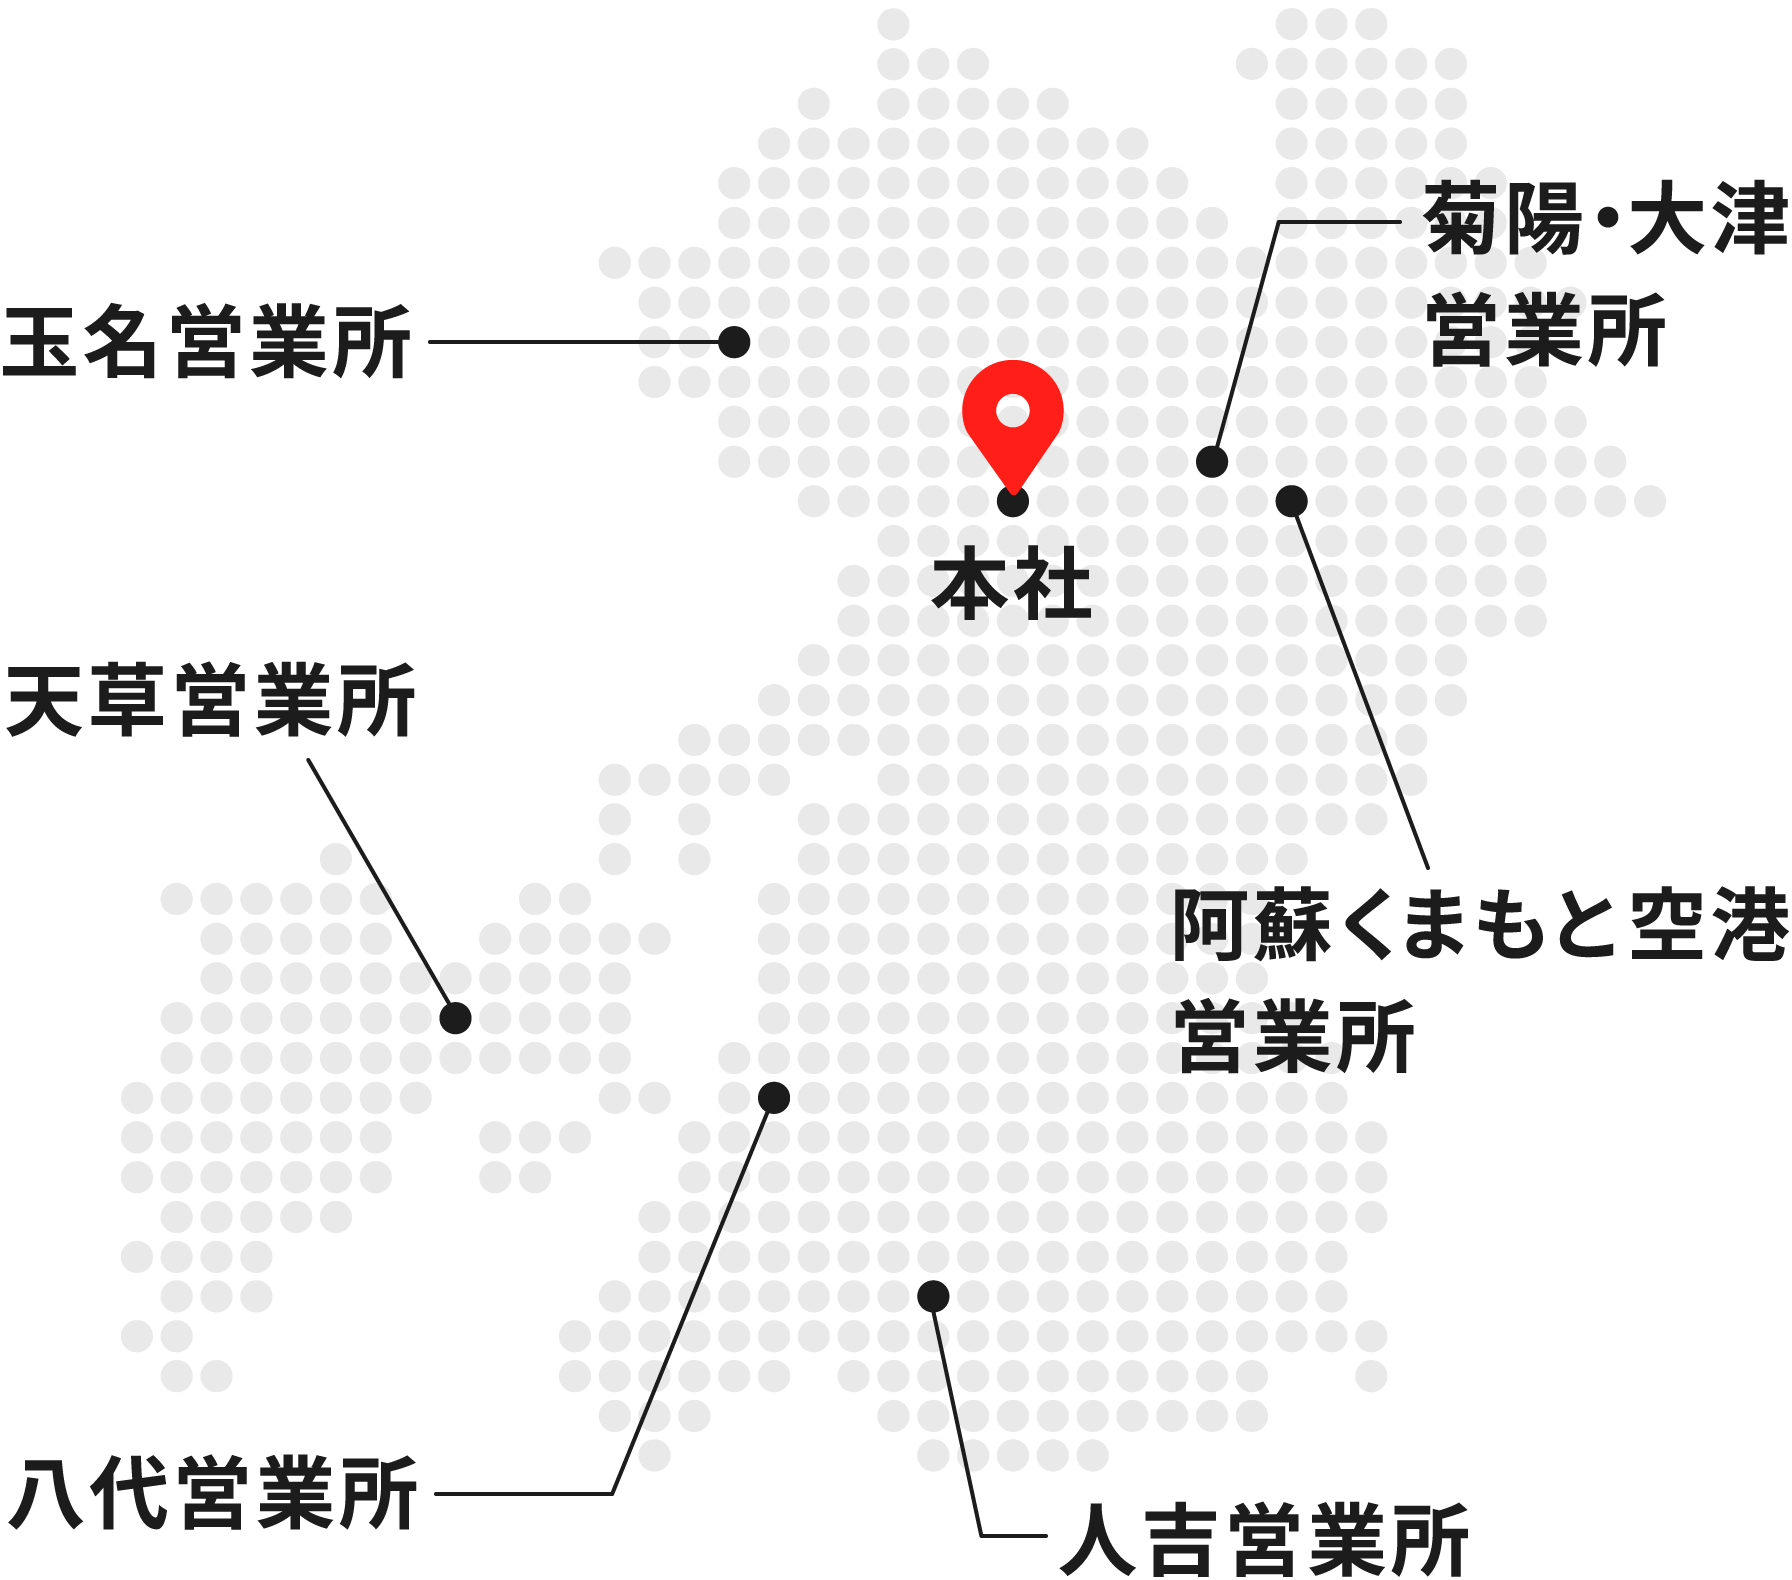 熊本日産レンタカー営業所マップ